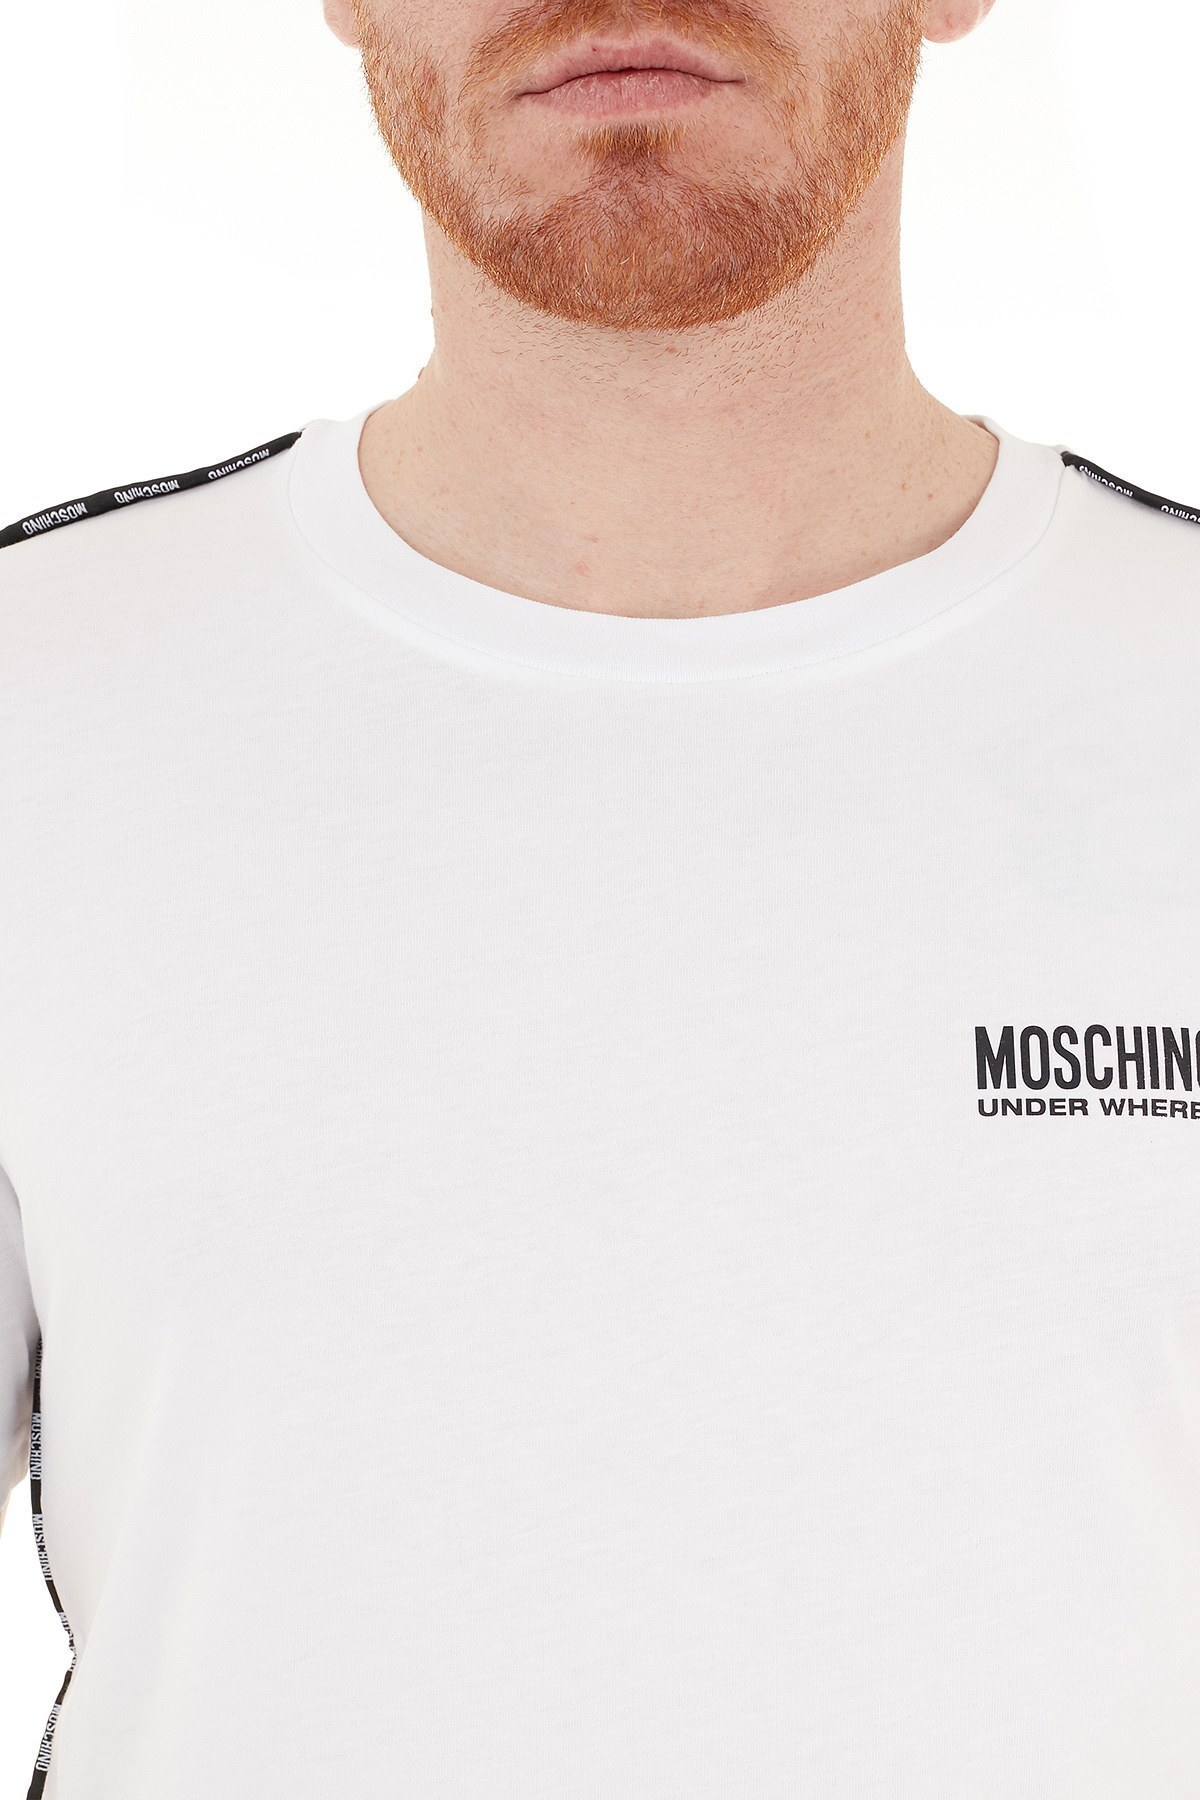 Moschino Logo Bantlı Bisiklet Yaka % 100 Pamuk Erkek T Shirt A1908 8114 0001 BEYAZ